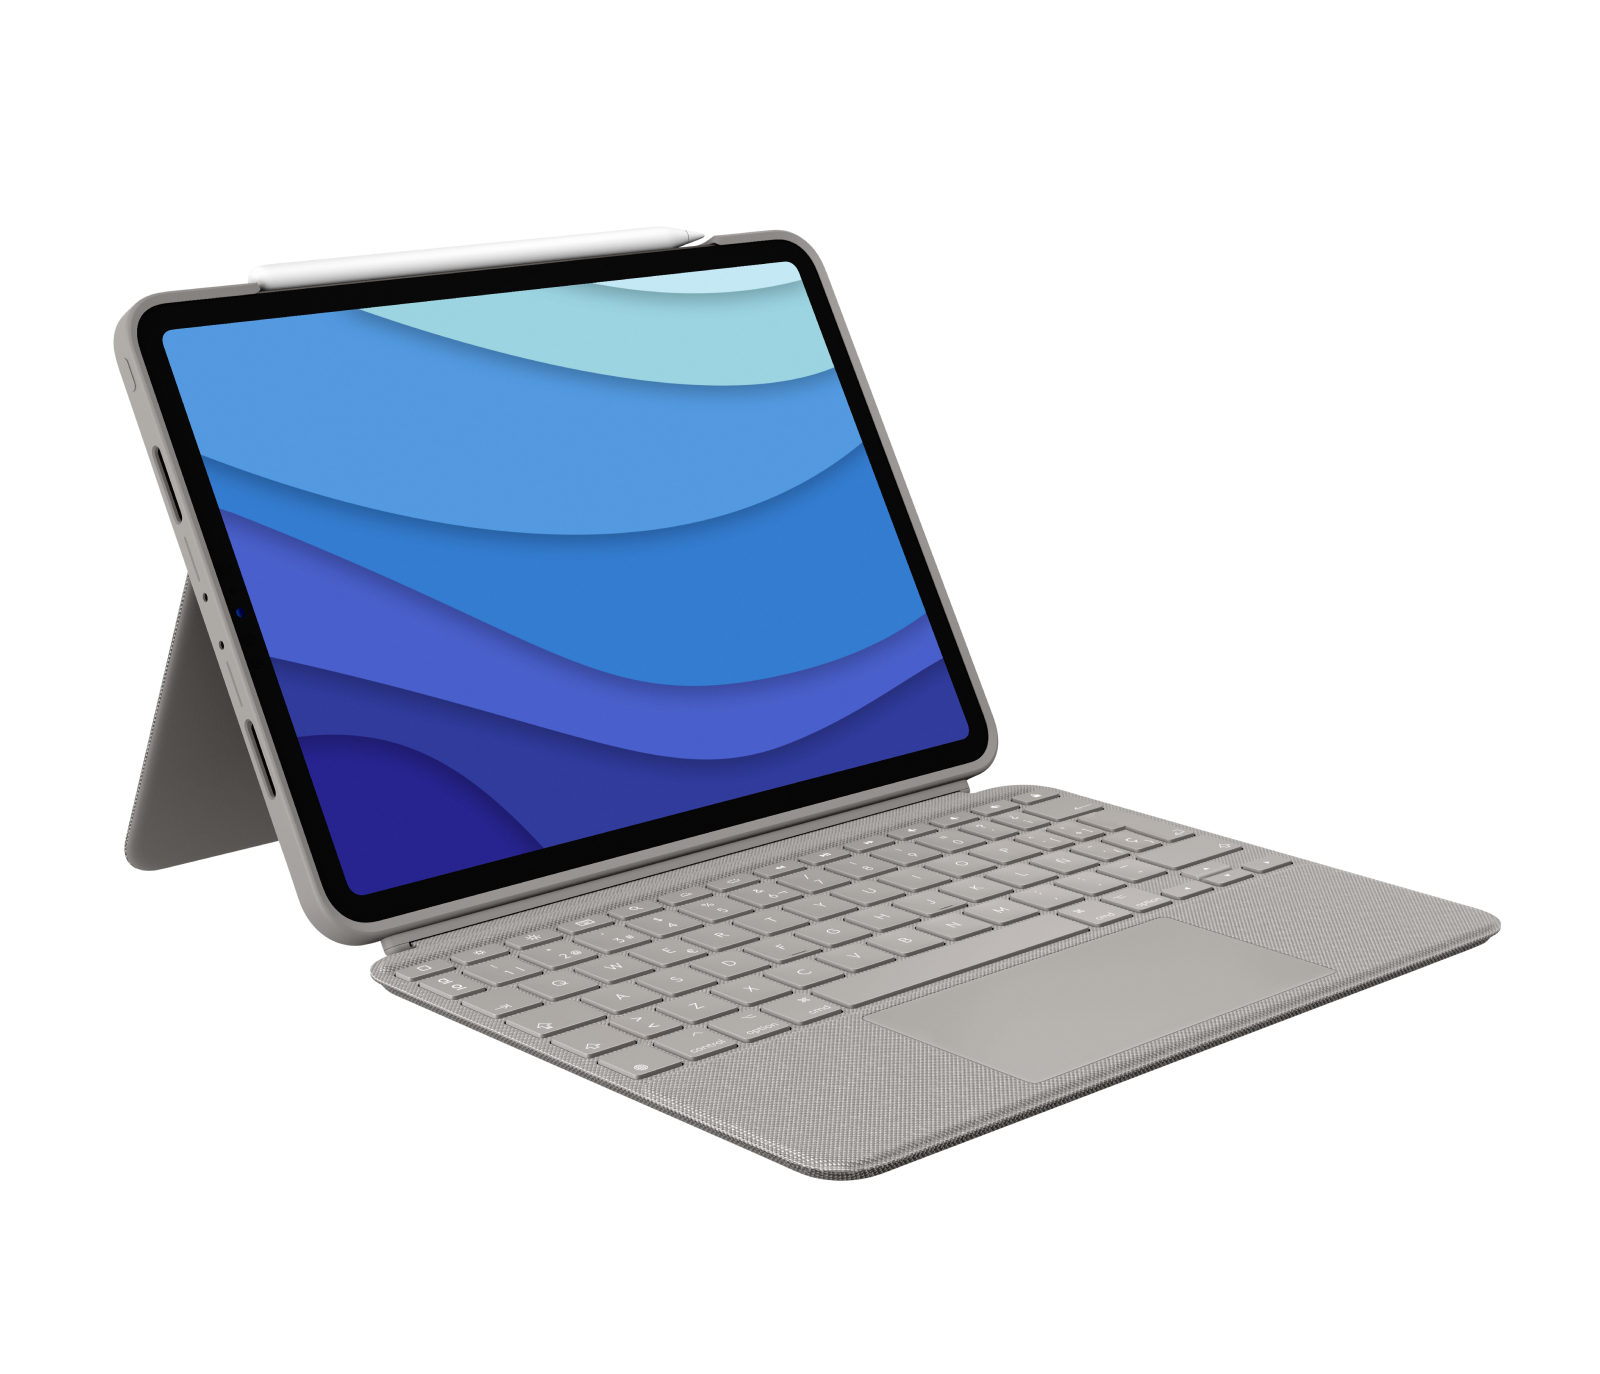 Combo bàn phím kiêm touchpad cho iPad Pro 12.9 inch sẽ biến chiếc iPad của bạn thành một máy tính xách tay đầy đủ tính năng, giúp bạn làm việc và giải trí đơn giản hơn bao giờ hết. Hãy xem hình ảnh để tìm hiểu thêm về sản phẩm này nhé! 